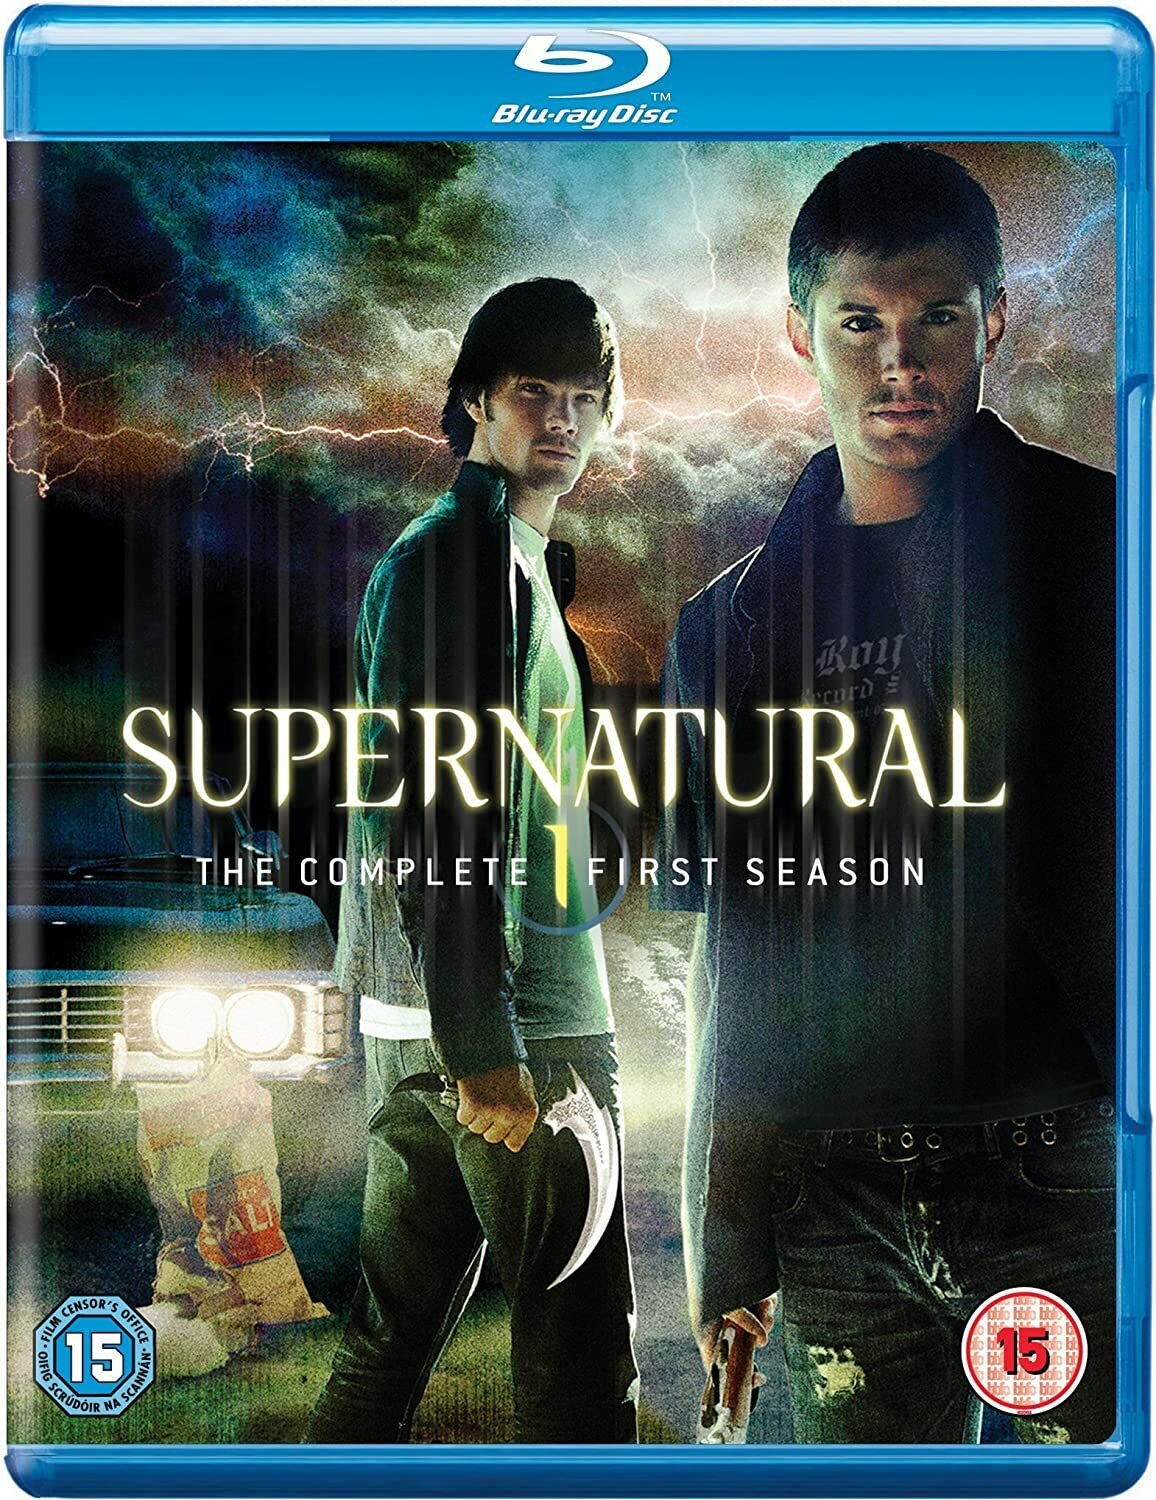 Jared Padalecki e Jensen Ackles nella copertina del cofanetto Blu-ray di Supernatural